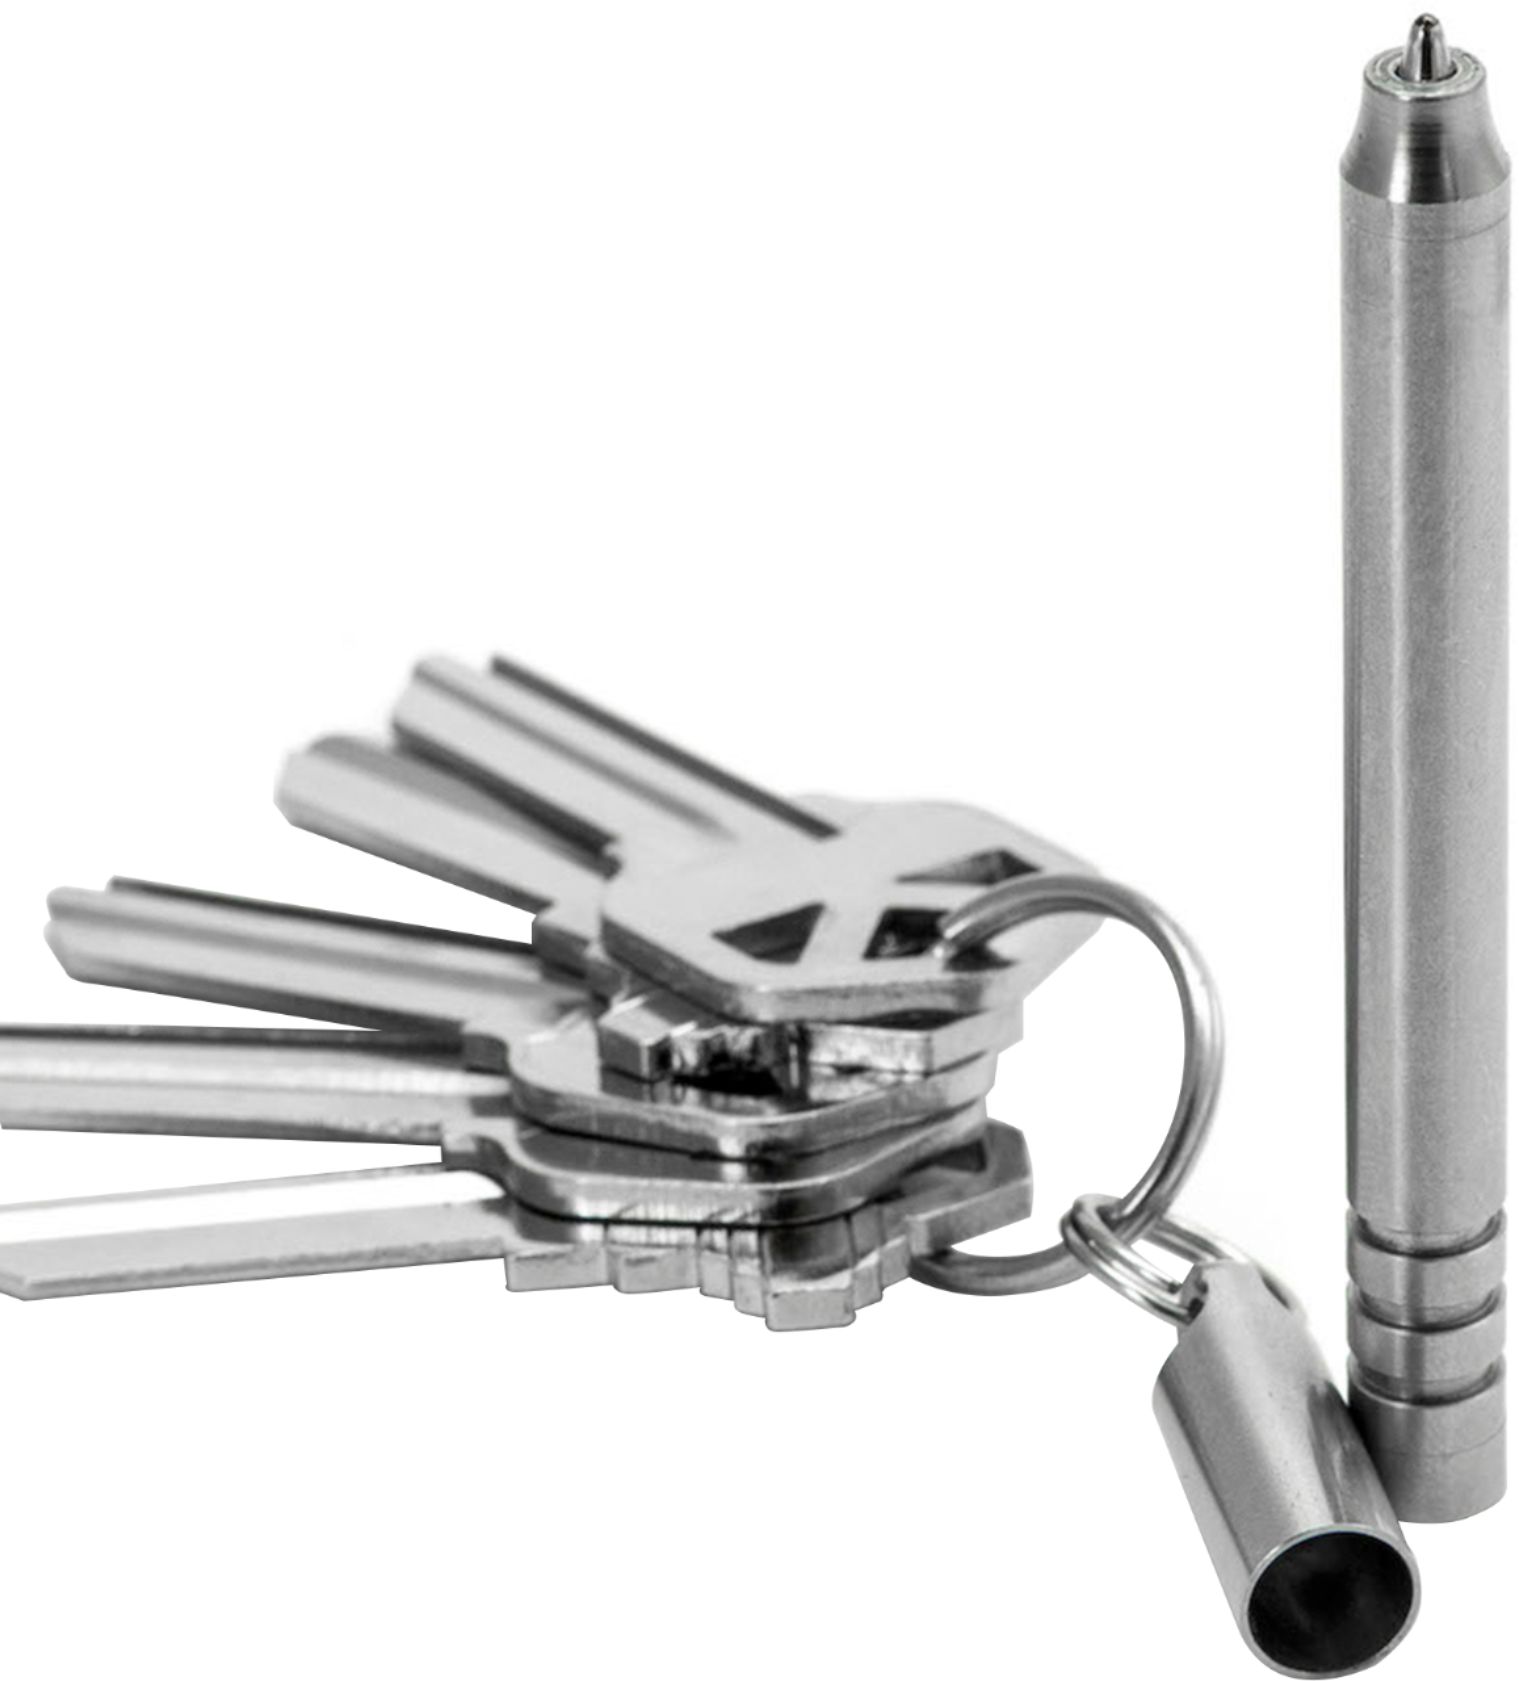 KeySmart - NanoPen Stainless Steel Keychain Pen - Silver